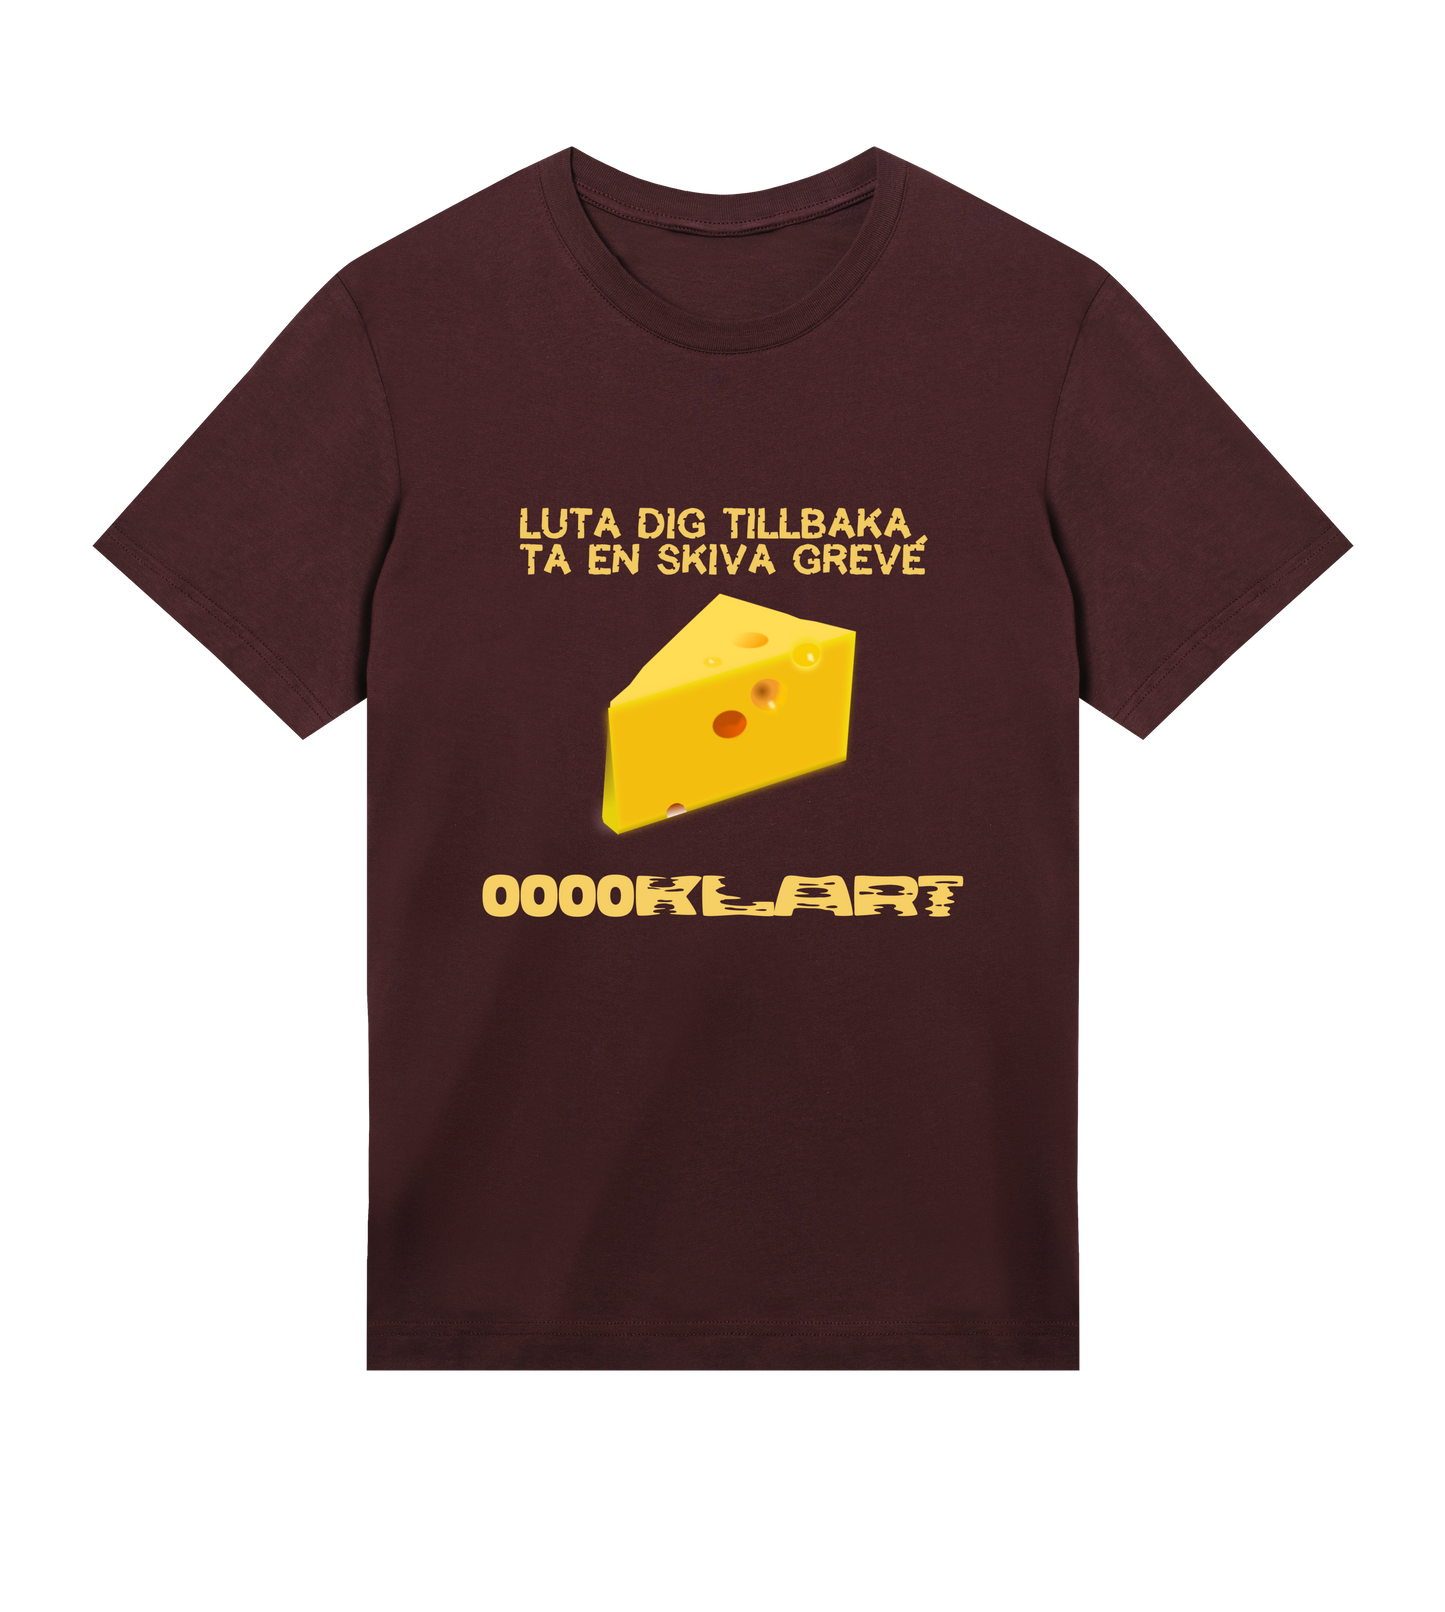 Ooooklart - Cheese Men's T-shirt